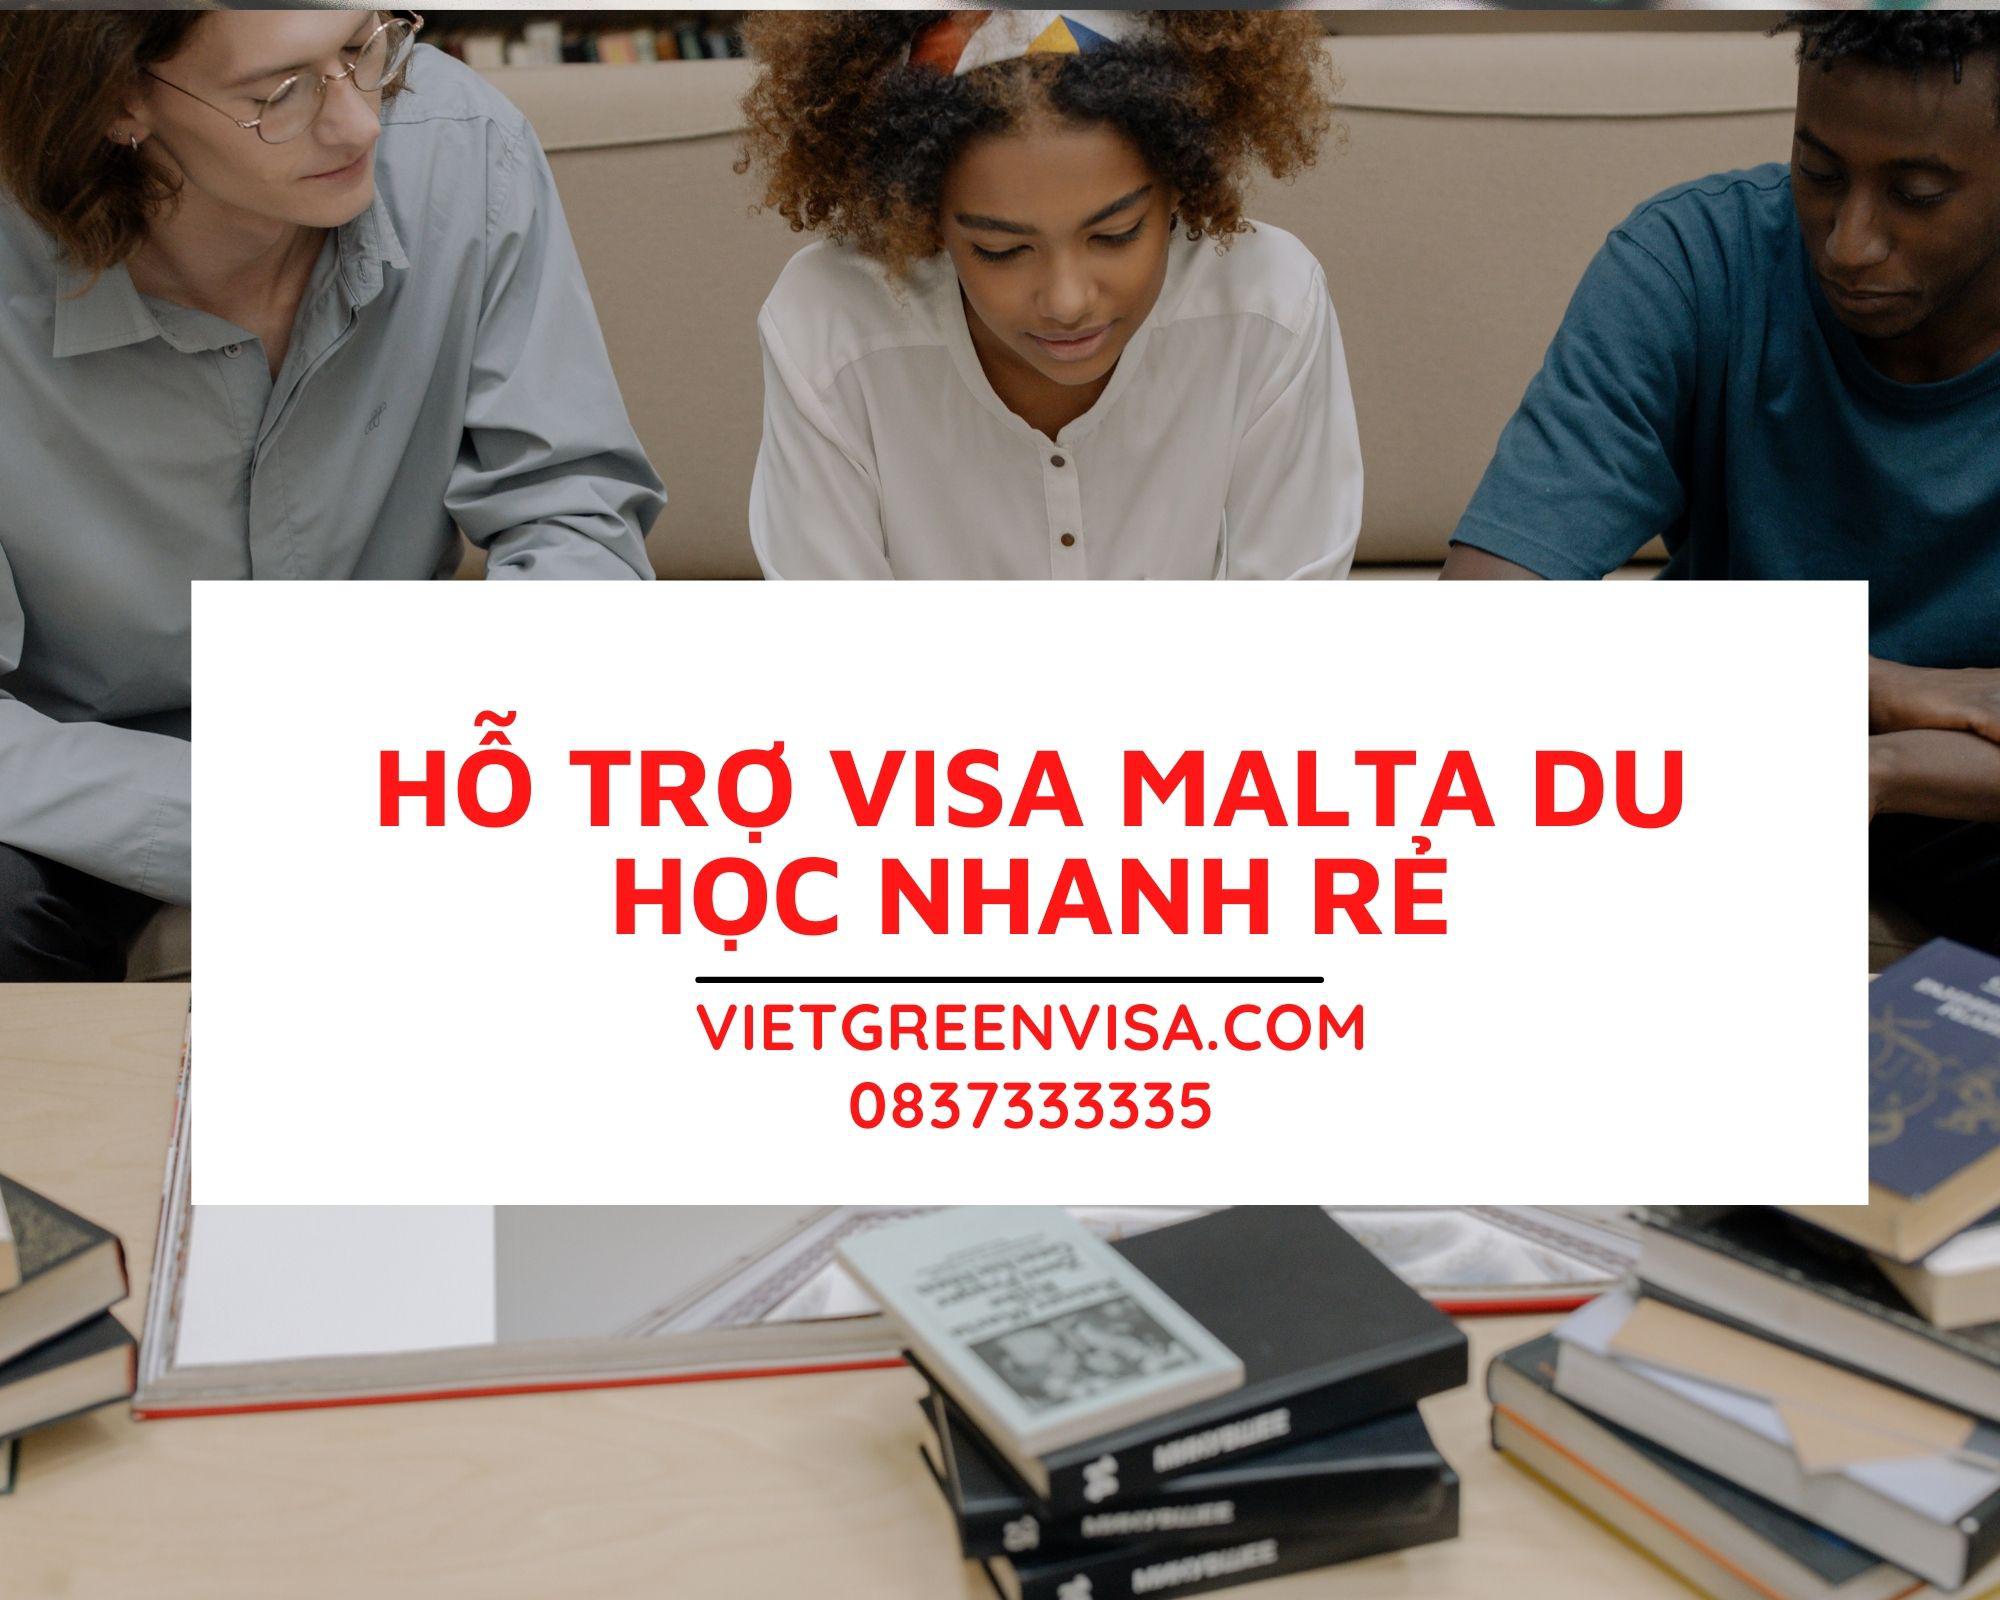 Dịch vụ làm visa du học Malta nhanh rẻ